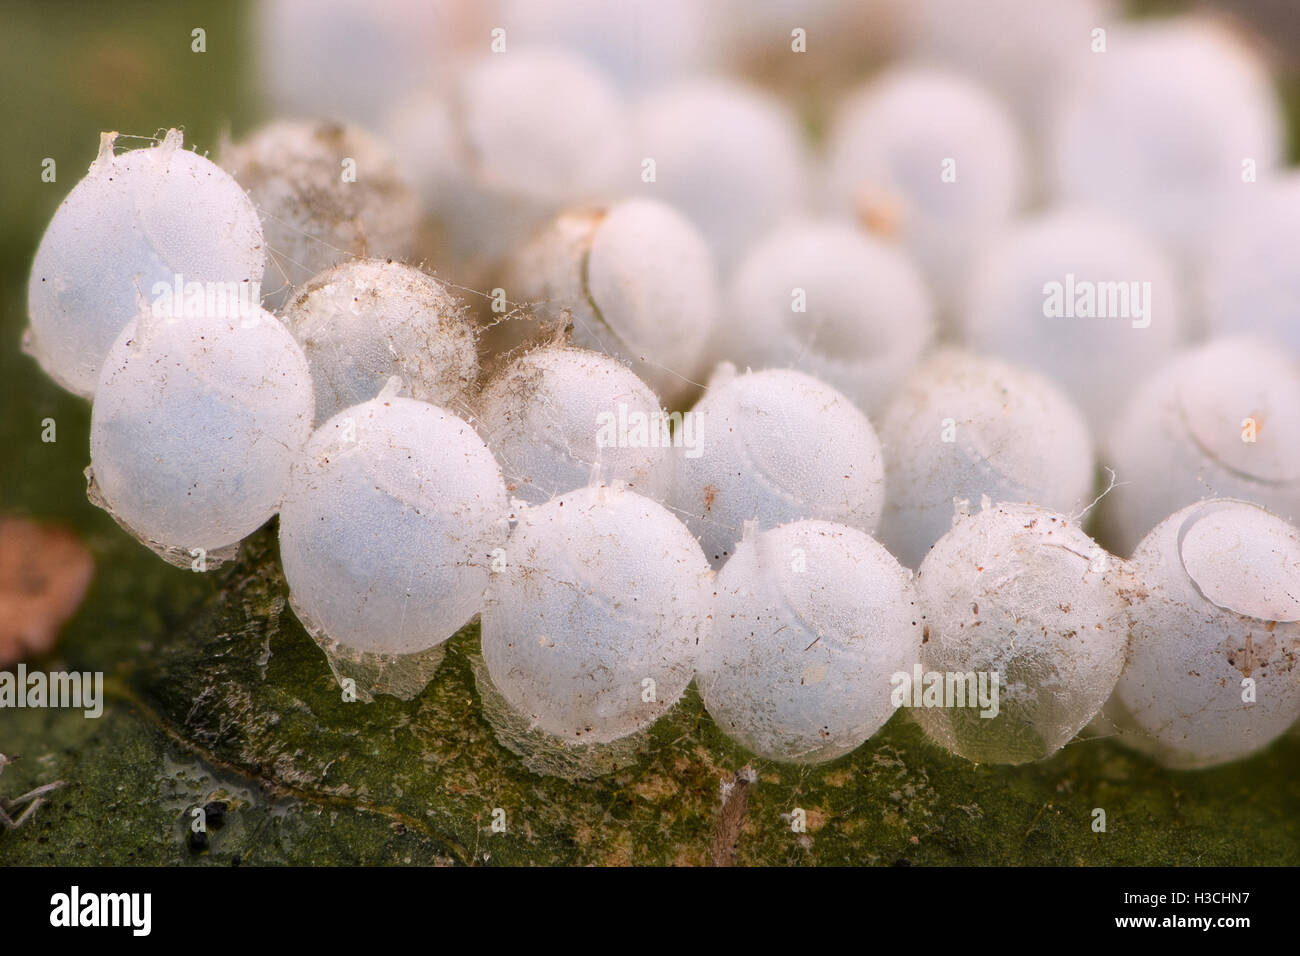 Extreme Vergrößerung - Eiern Stink Bug Stockfoto